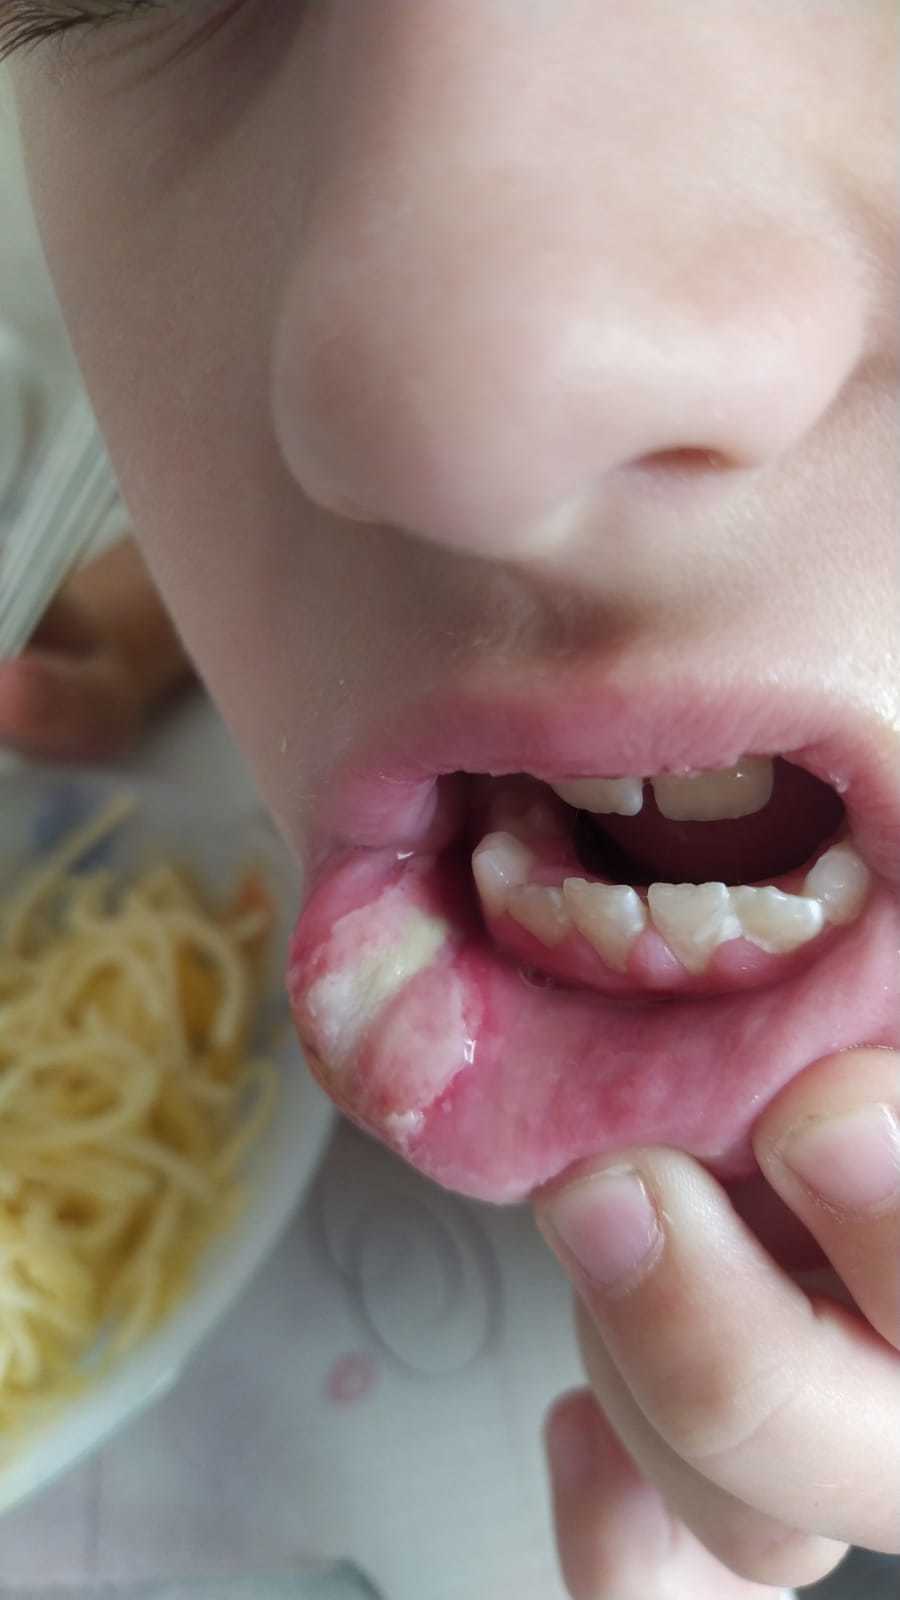 «Ребенок накусал губу во время анестезии – что делать?»